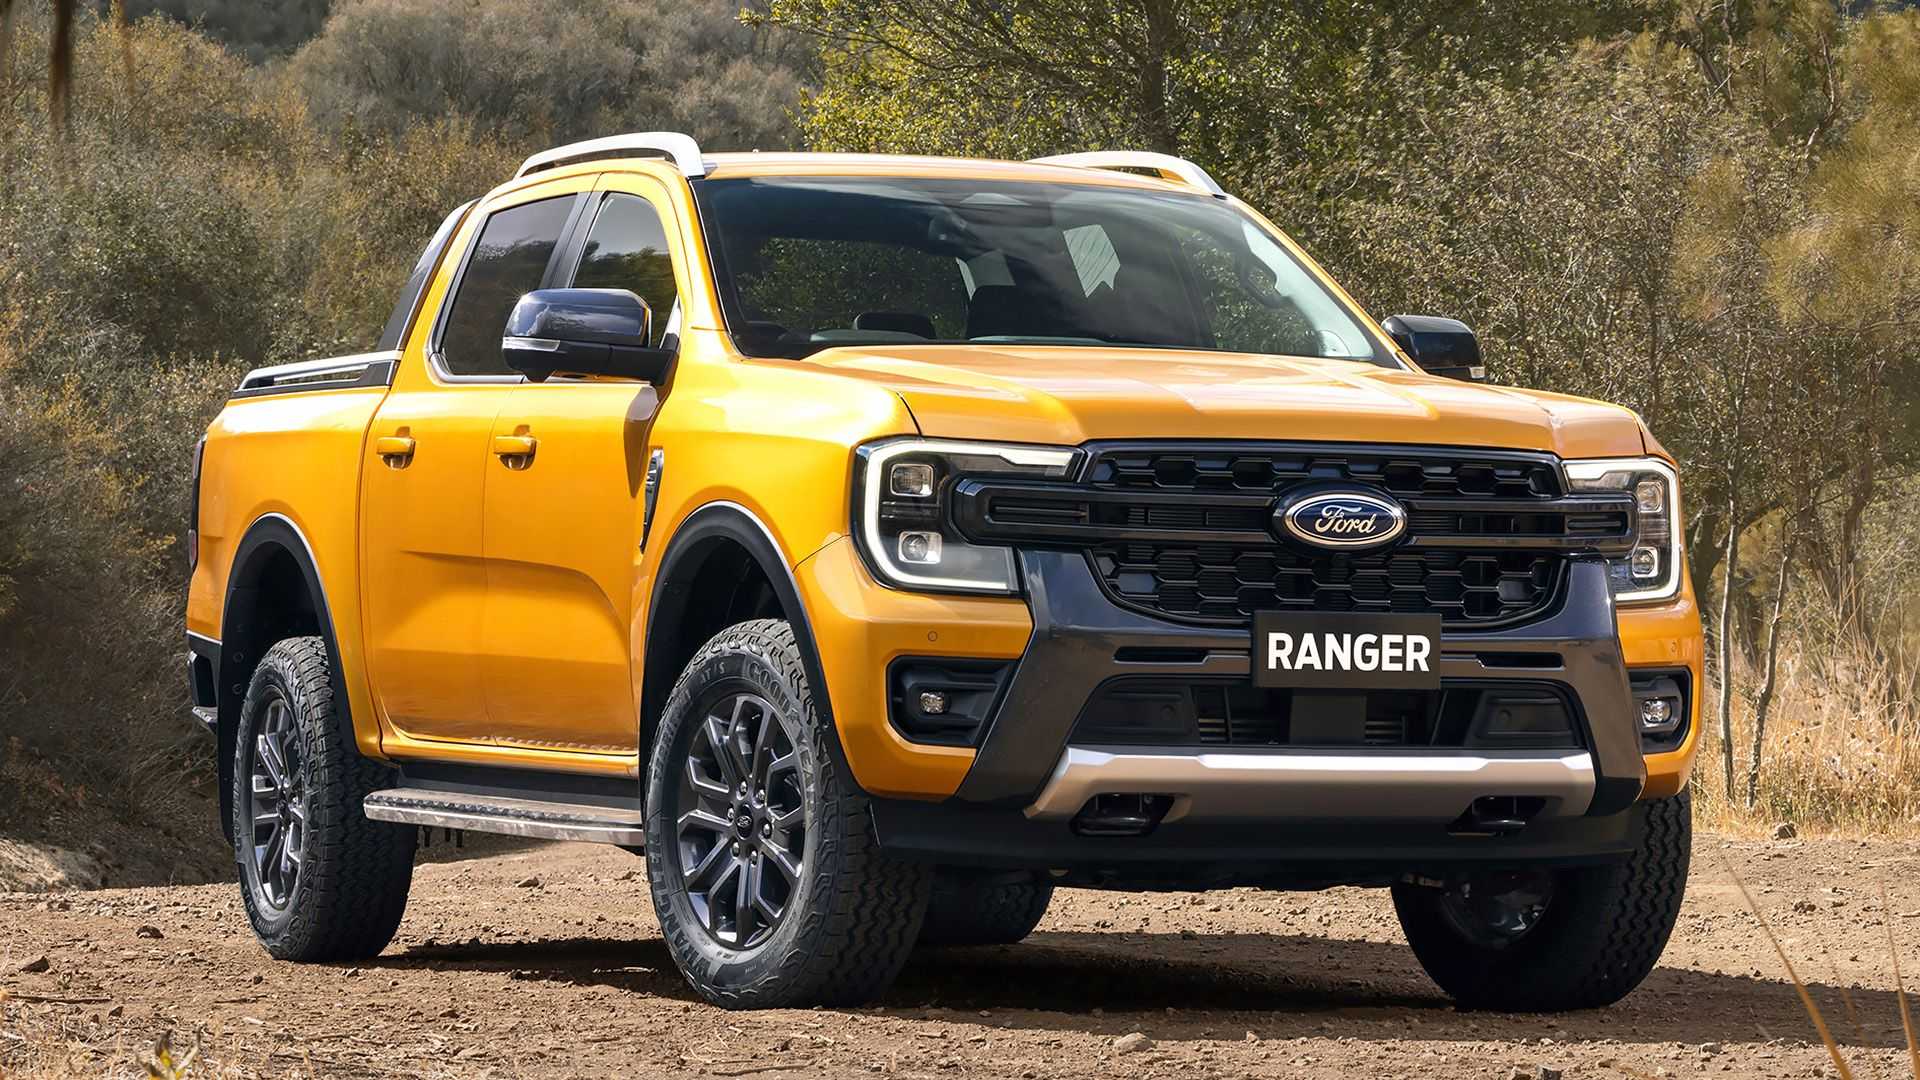 2023 Ford Ranger